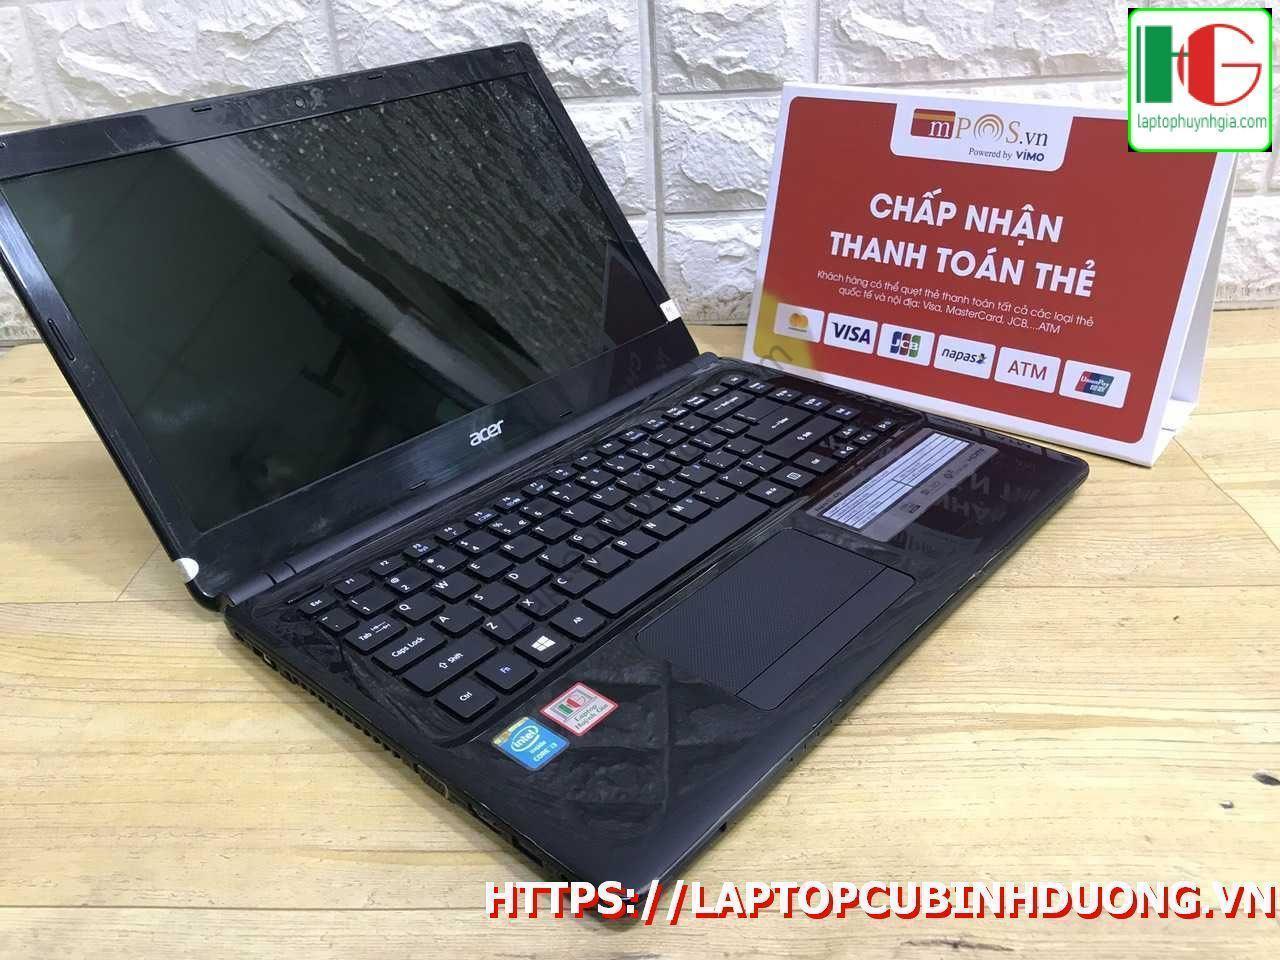 Laptop Acer E1 471 I3 3217u 4g 500g Lcd 14 Laptopcubinhduong.vn 4 [kích Thước Gốc] Result